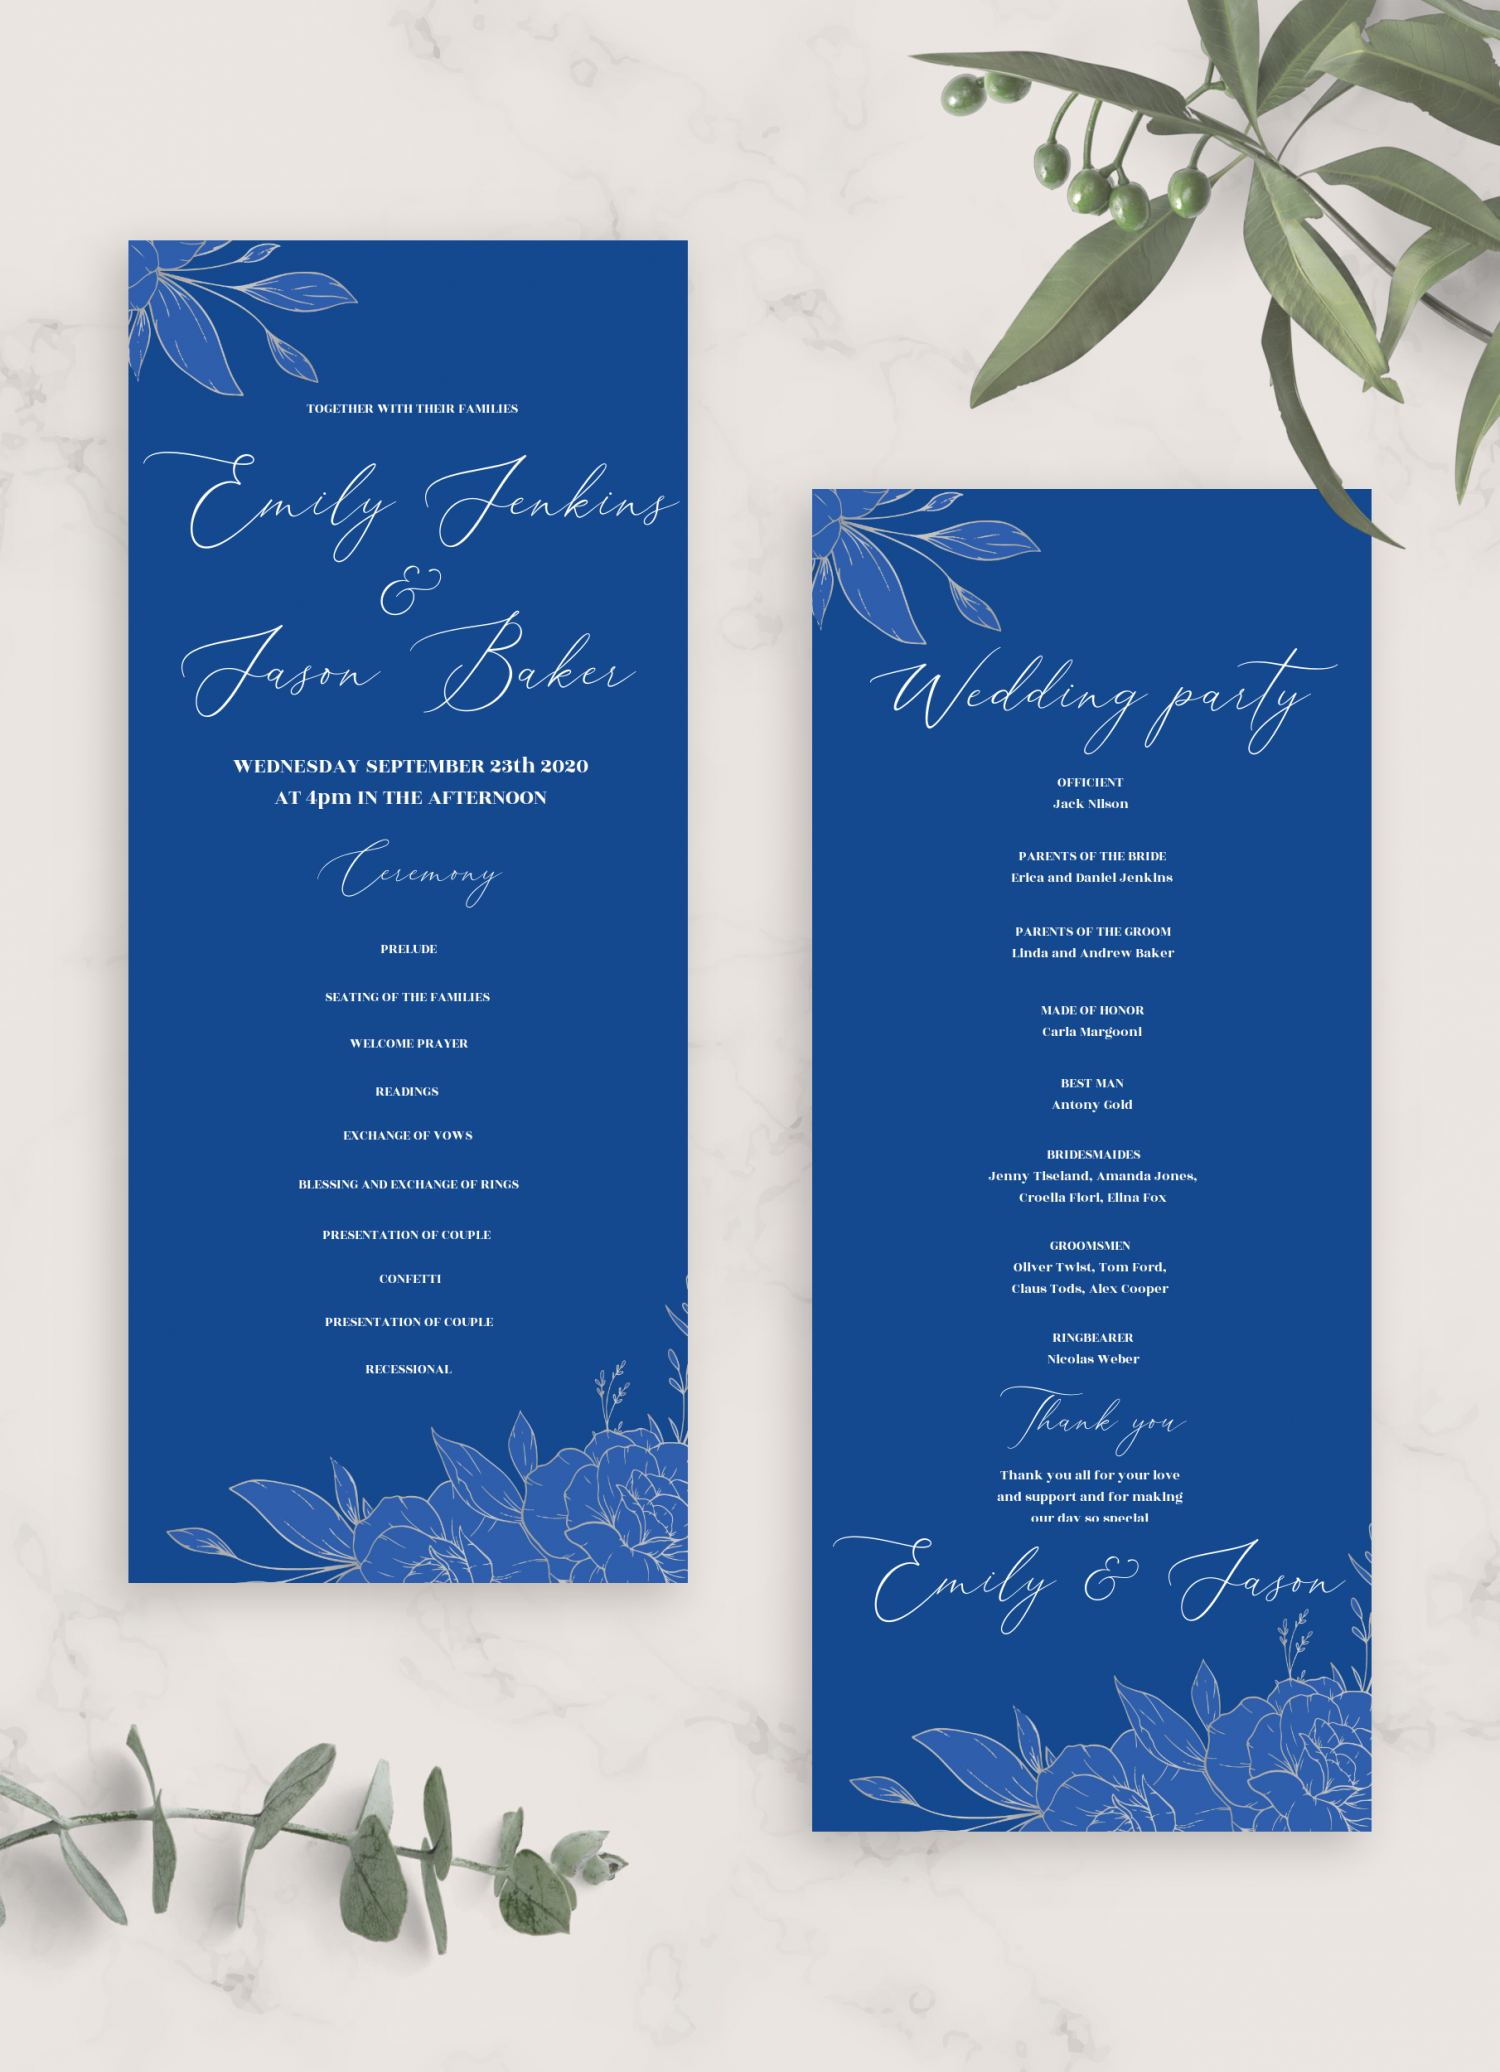 Bộ sản phẩm thiệp cưới màu xanh Hoàng gia và bạc có thể in - PDF sẽ giúp cho bạn có thể tạo ra những thiệp cưới tuyệt đẹp với chi phí tiết kiệm nhất. Hãy xem ảnh để cảm nhận sự tinh tế của từng thiết kế thiệp cưới, từ đó giúp cho bạn chọn được kiểu thiệp màu xanh Hoàng gia phù hợp với phong cách lễ cưới của mình.